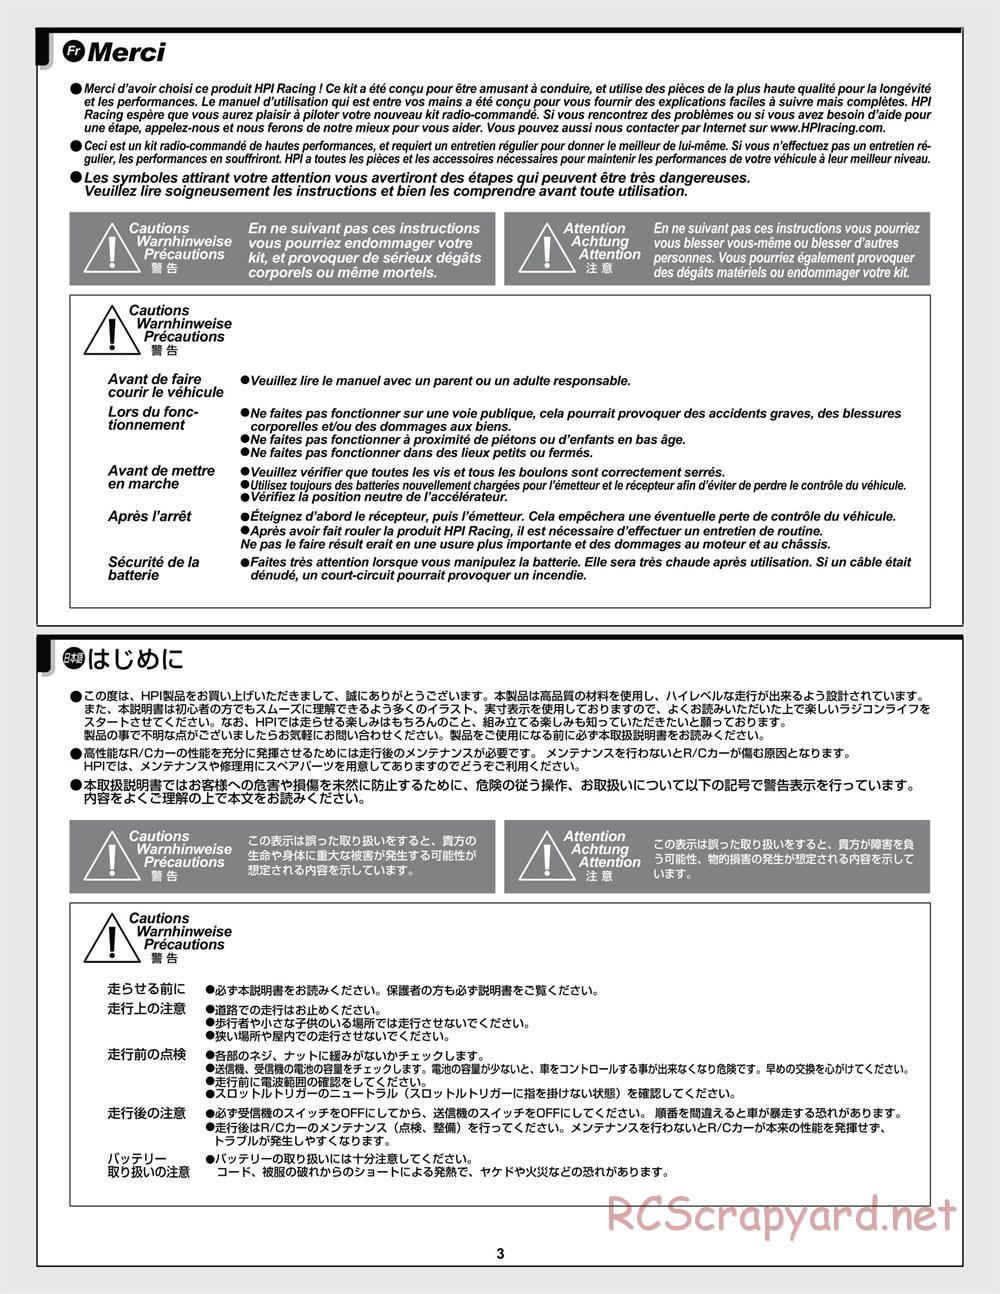 HPI - Jumpshot MT V2 - Manual - Page 3